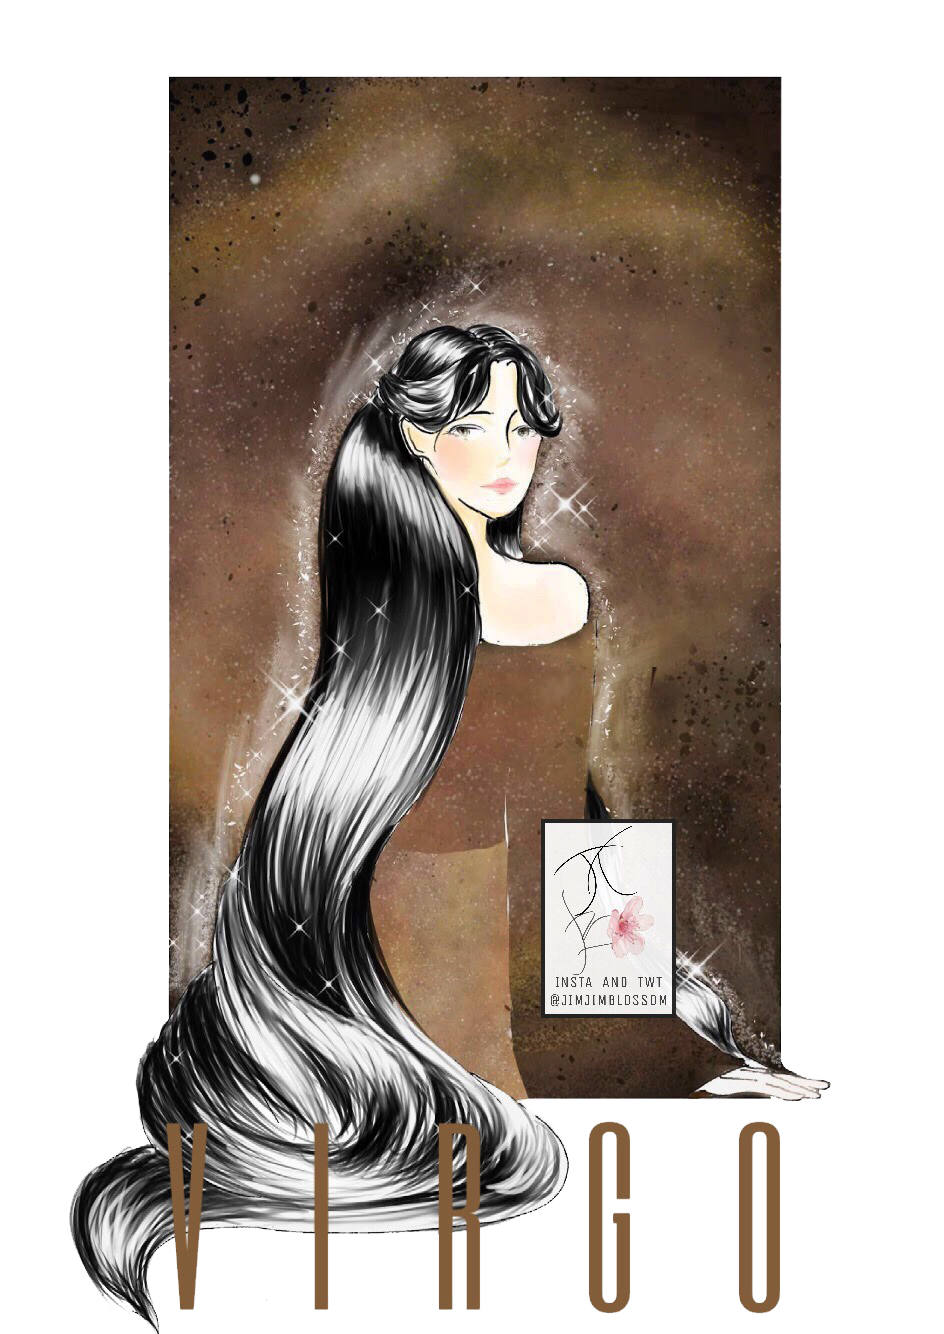 Cung hoàng đạo Xử Nữ qua hình tượng một cô gái tóc dài